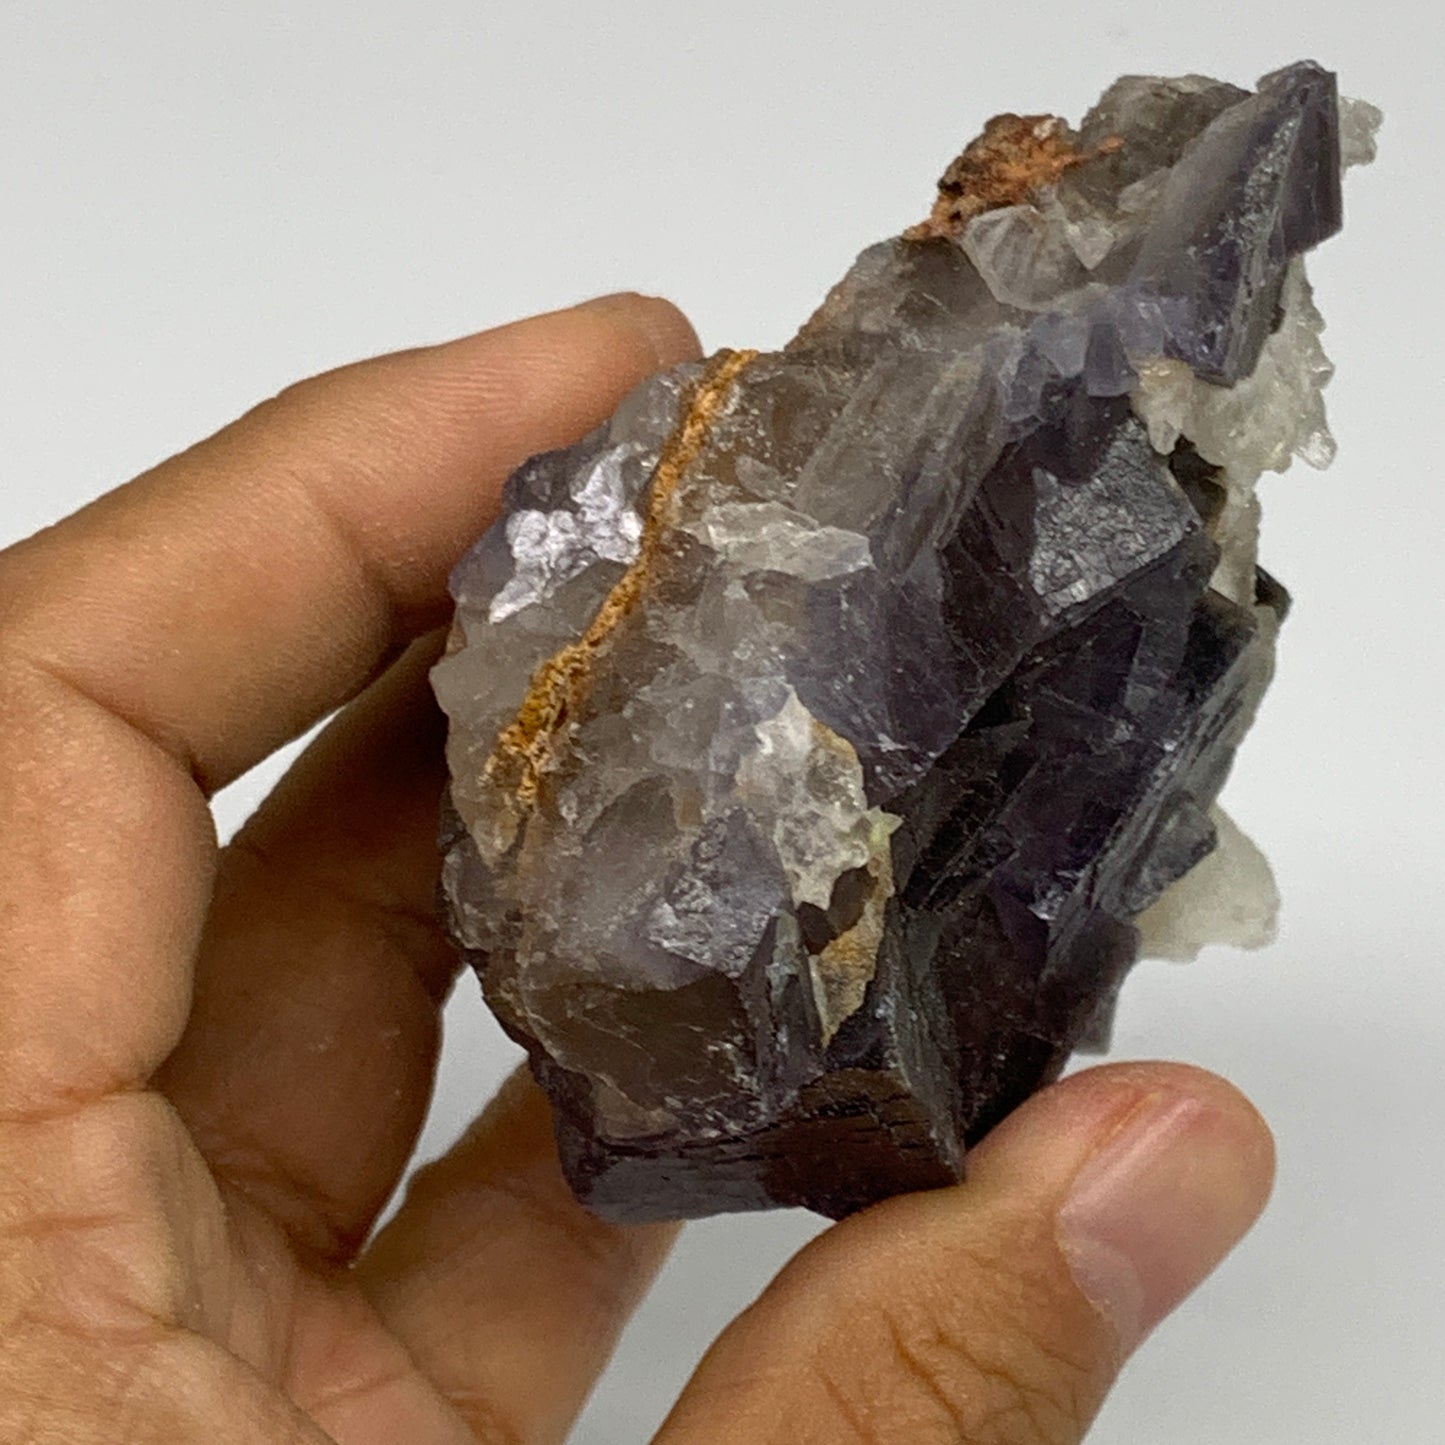 256.2g, 2.9"x2.9"x1.6", Purple Fluorite Crystal Mineral Specimen @Pakistan, B273